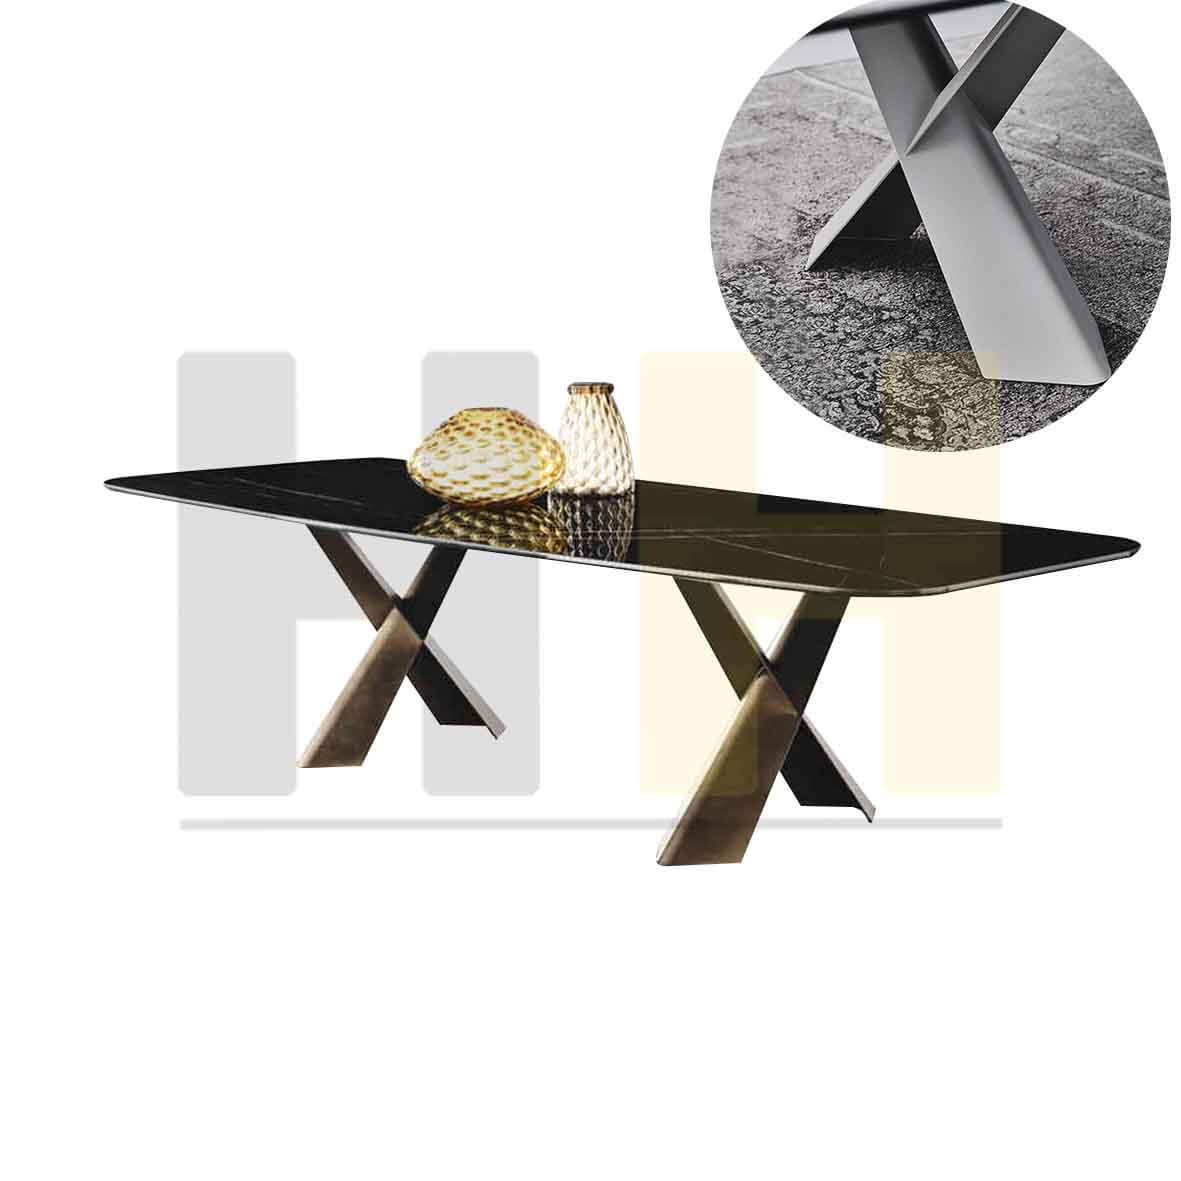 頤朵 麥斯 鐵腳原木餐桌 Cattelan Italia Mad Max Keramik Premium Table 特殊底板設計 陶板餐桌 義大利 西班牙 台灣